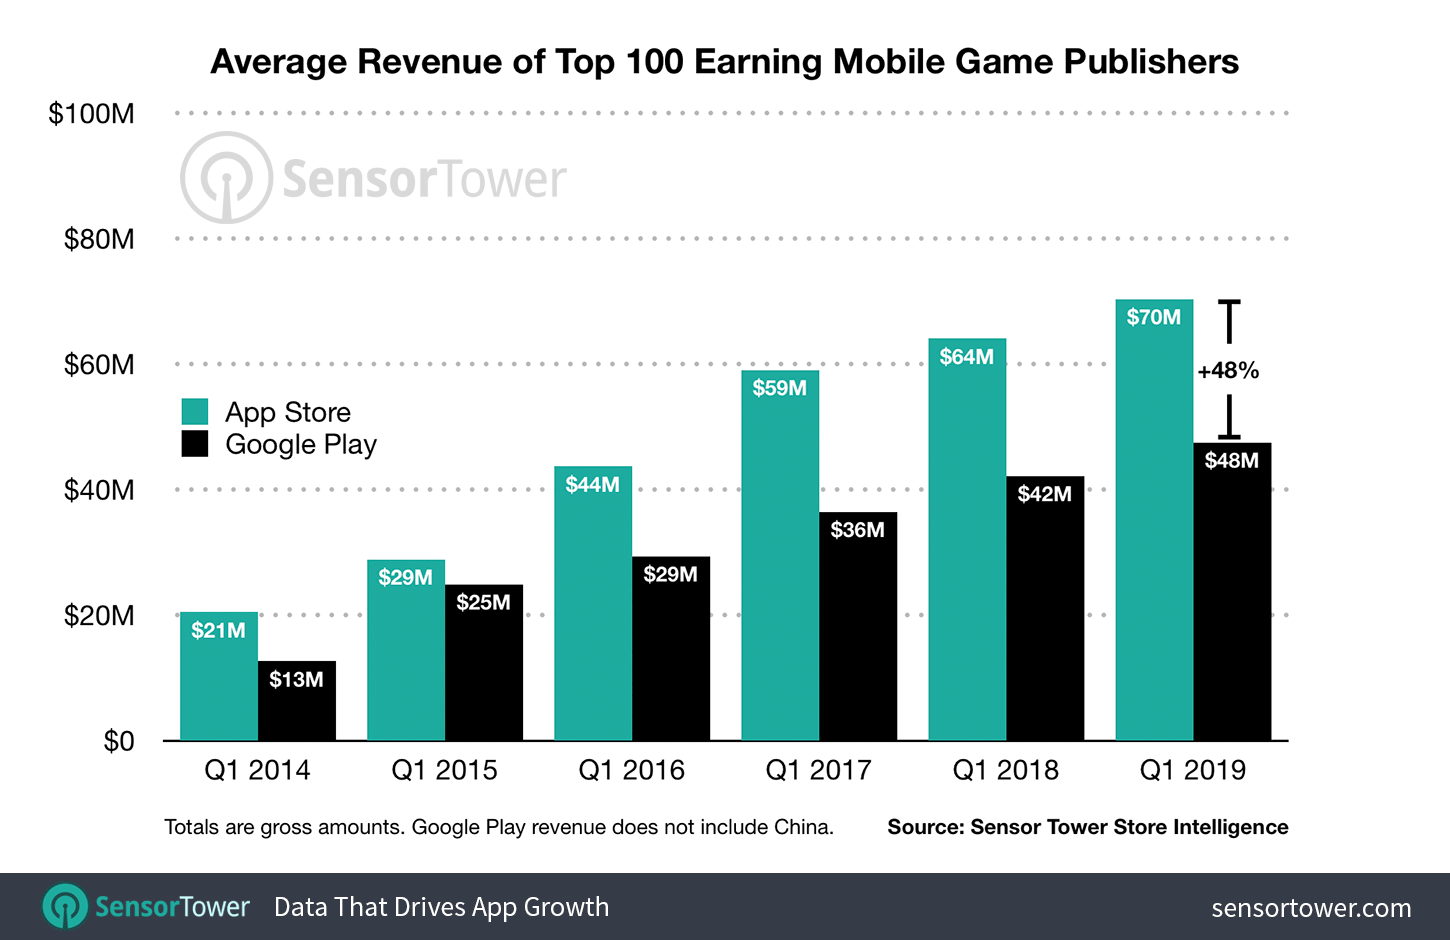 Average Revenue Per Top 100 Mobile Game Publishers Q1 2019